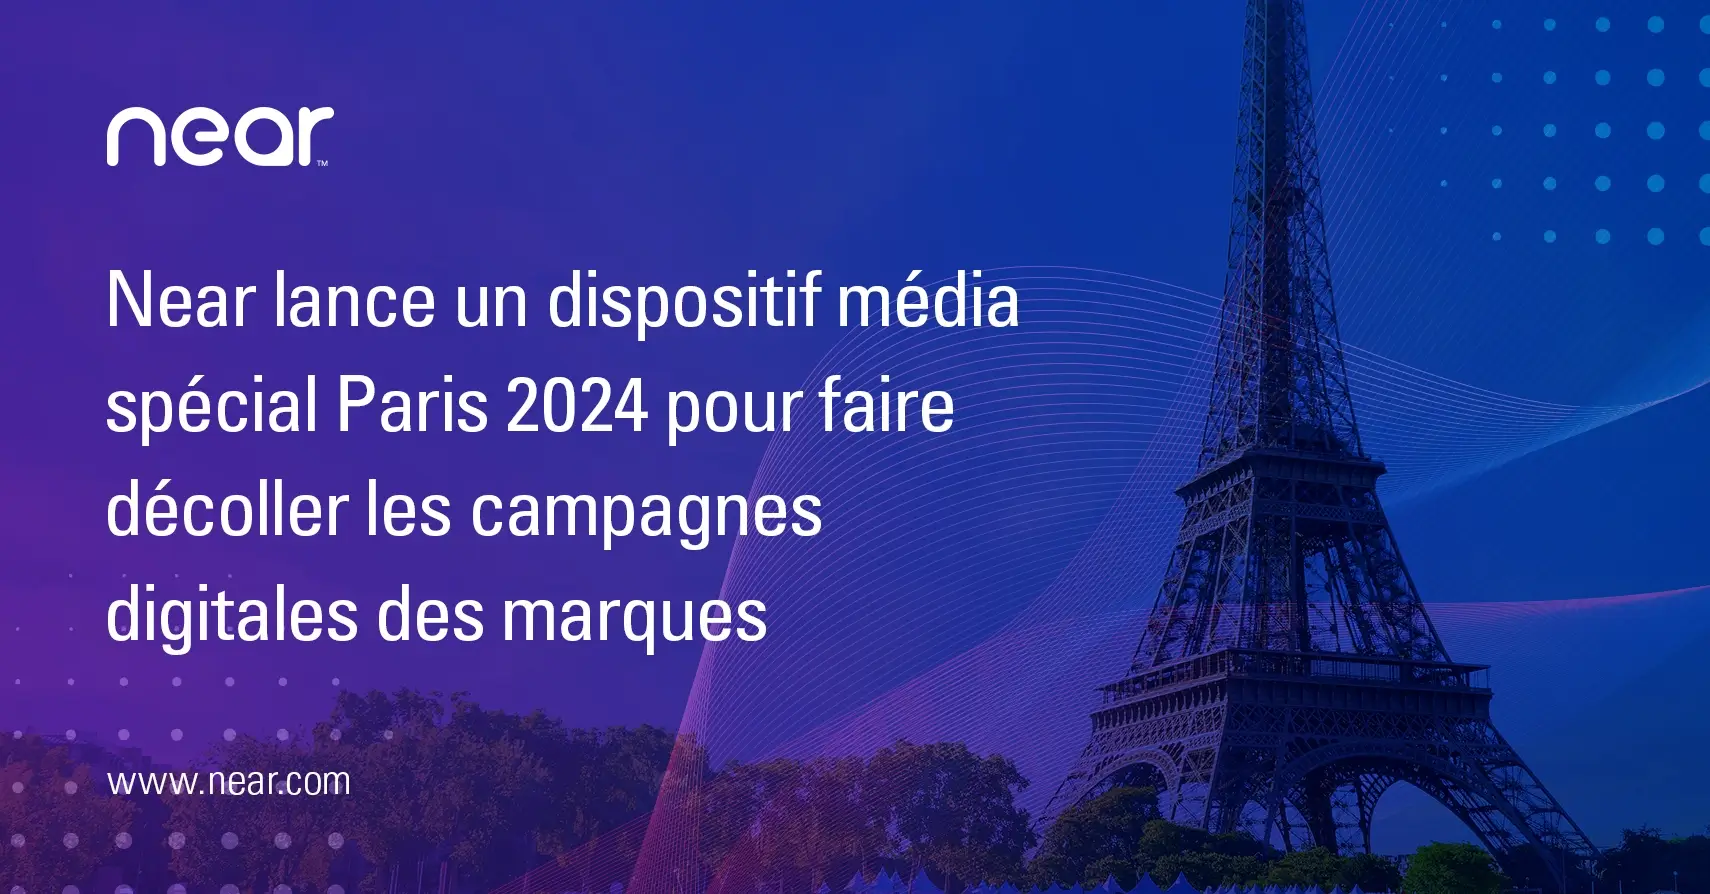 Near lance un dispositif média spécial Paris 2024 pour faire décoller les campagnes digitales des marques